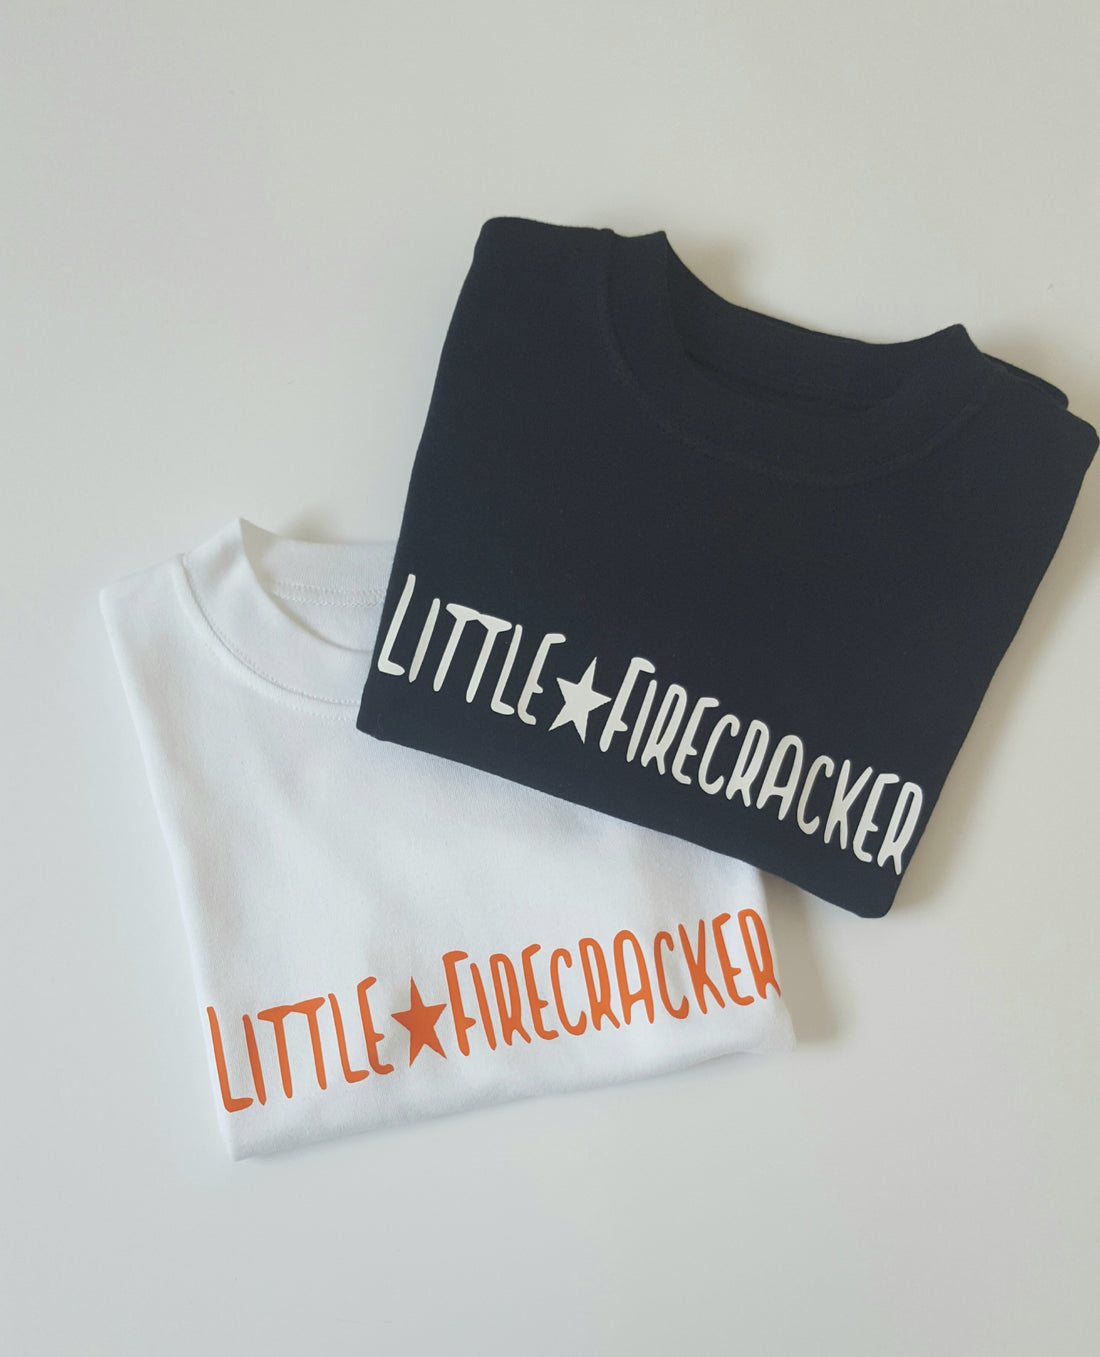  Little Firecracker Tee: Adorable T-Shirts for Kids